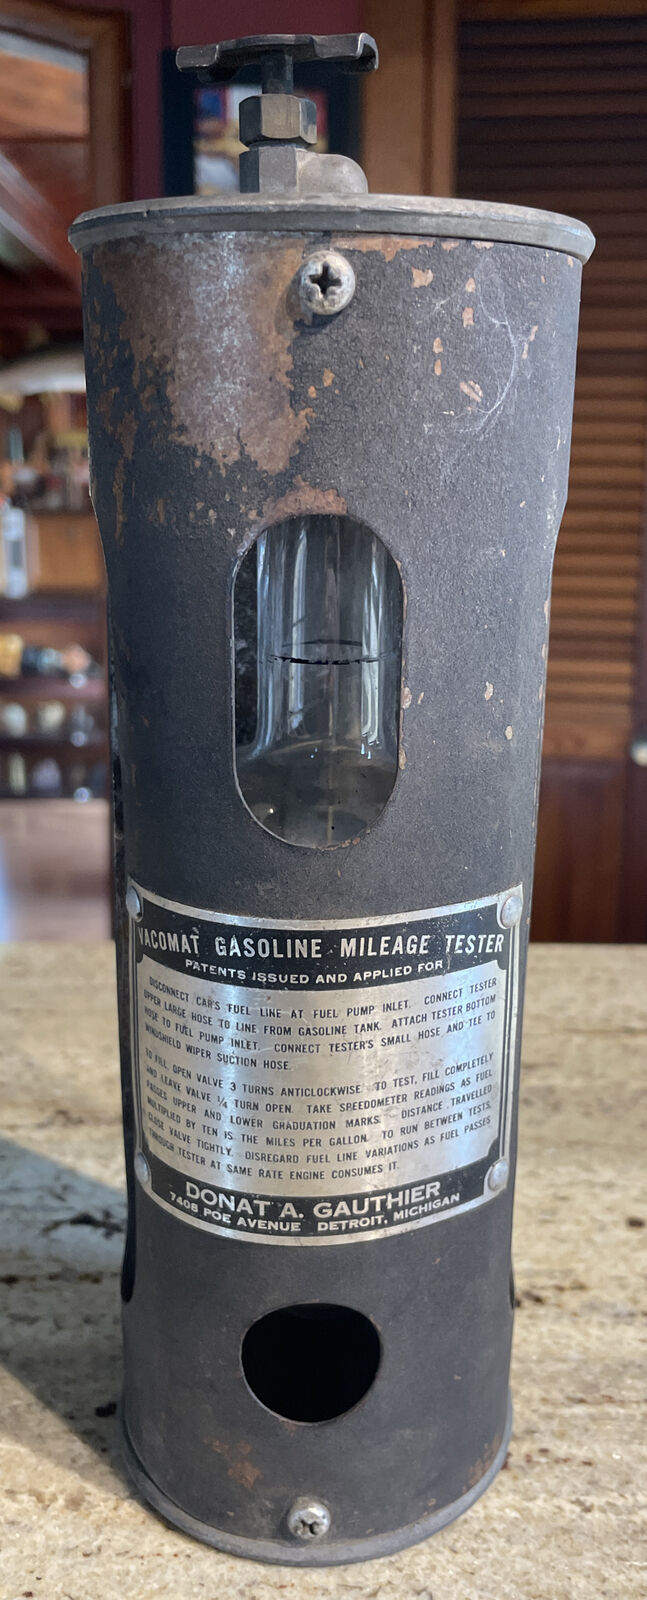 Vintage Vacomat Gasoline Mileage Tester - Donat A. Gauthier - Detroit, Michigan